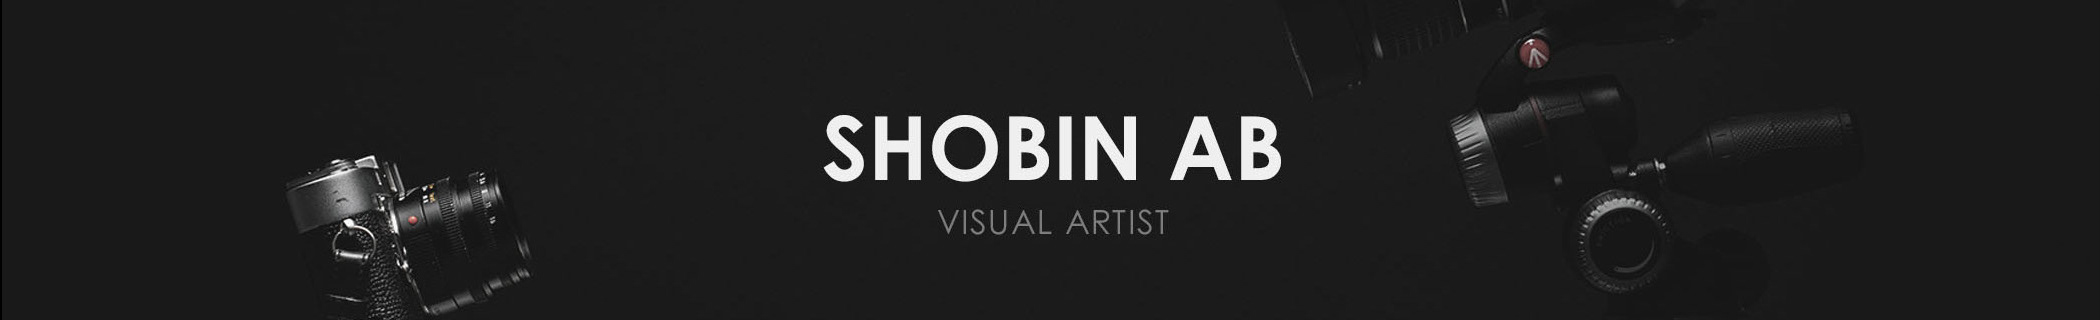 Banner de perfil de Shobin AB